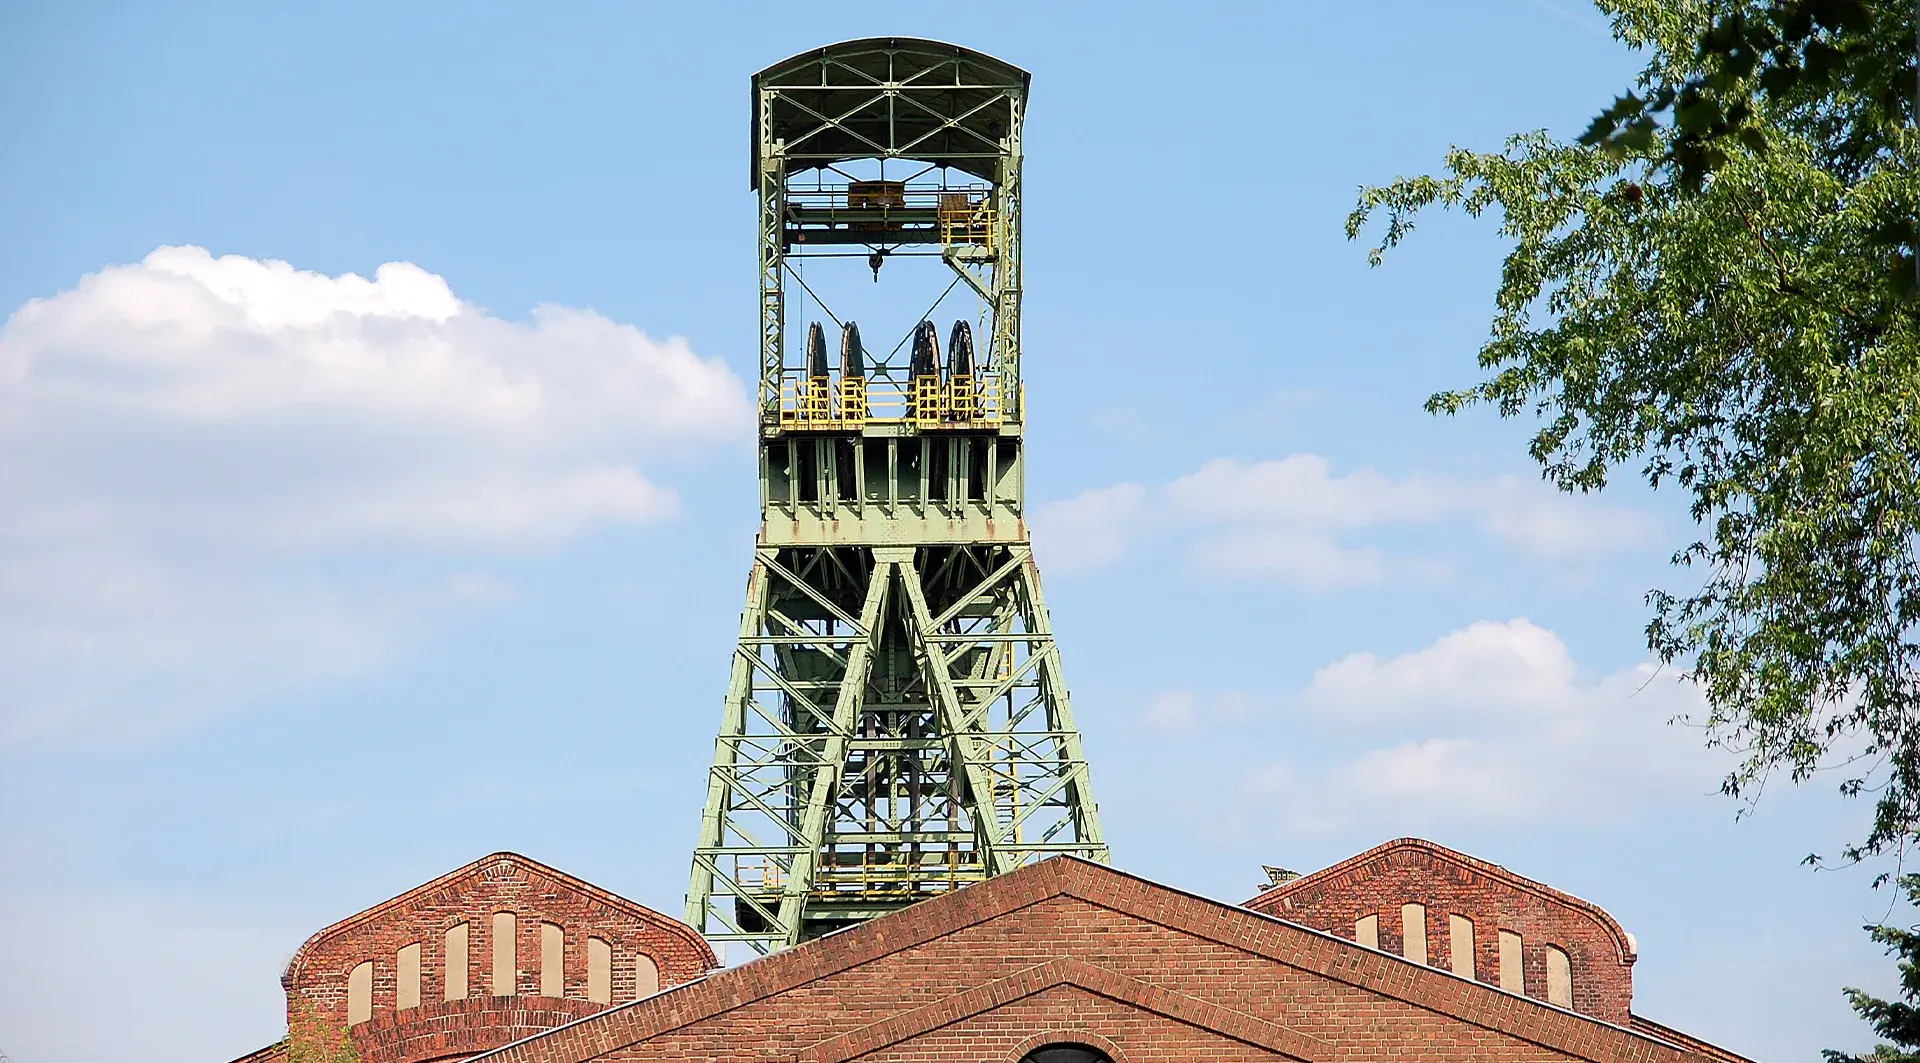 Der kleine Förderturm des ehemaligen Bergwerks Lohberg, das 2005 stillgelegt wurde. Dieser Förderturm ist inzwischen abgerissen. Sein großer „Bruder“ wird derzeit restauriert.